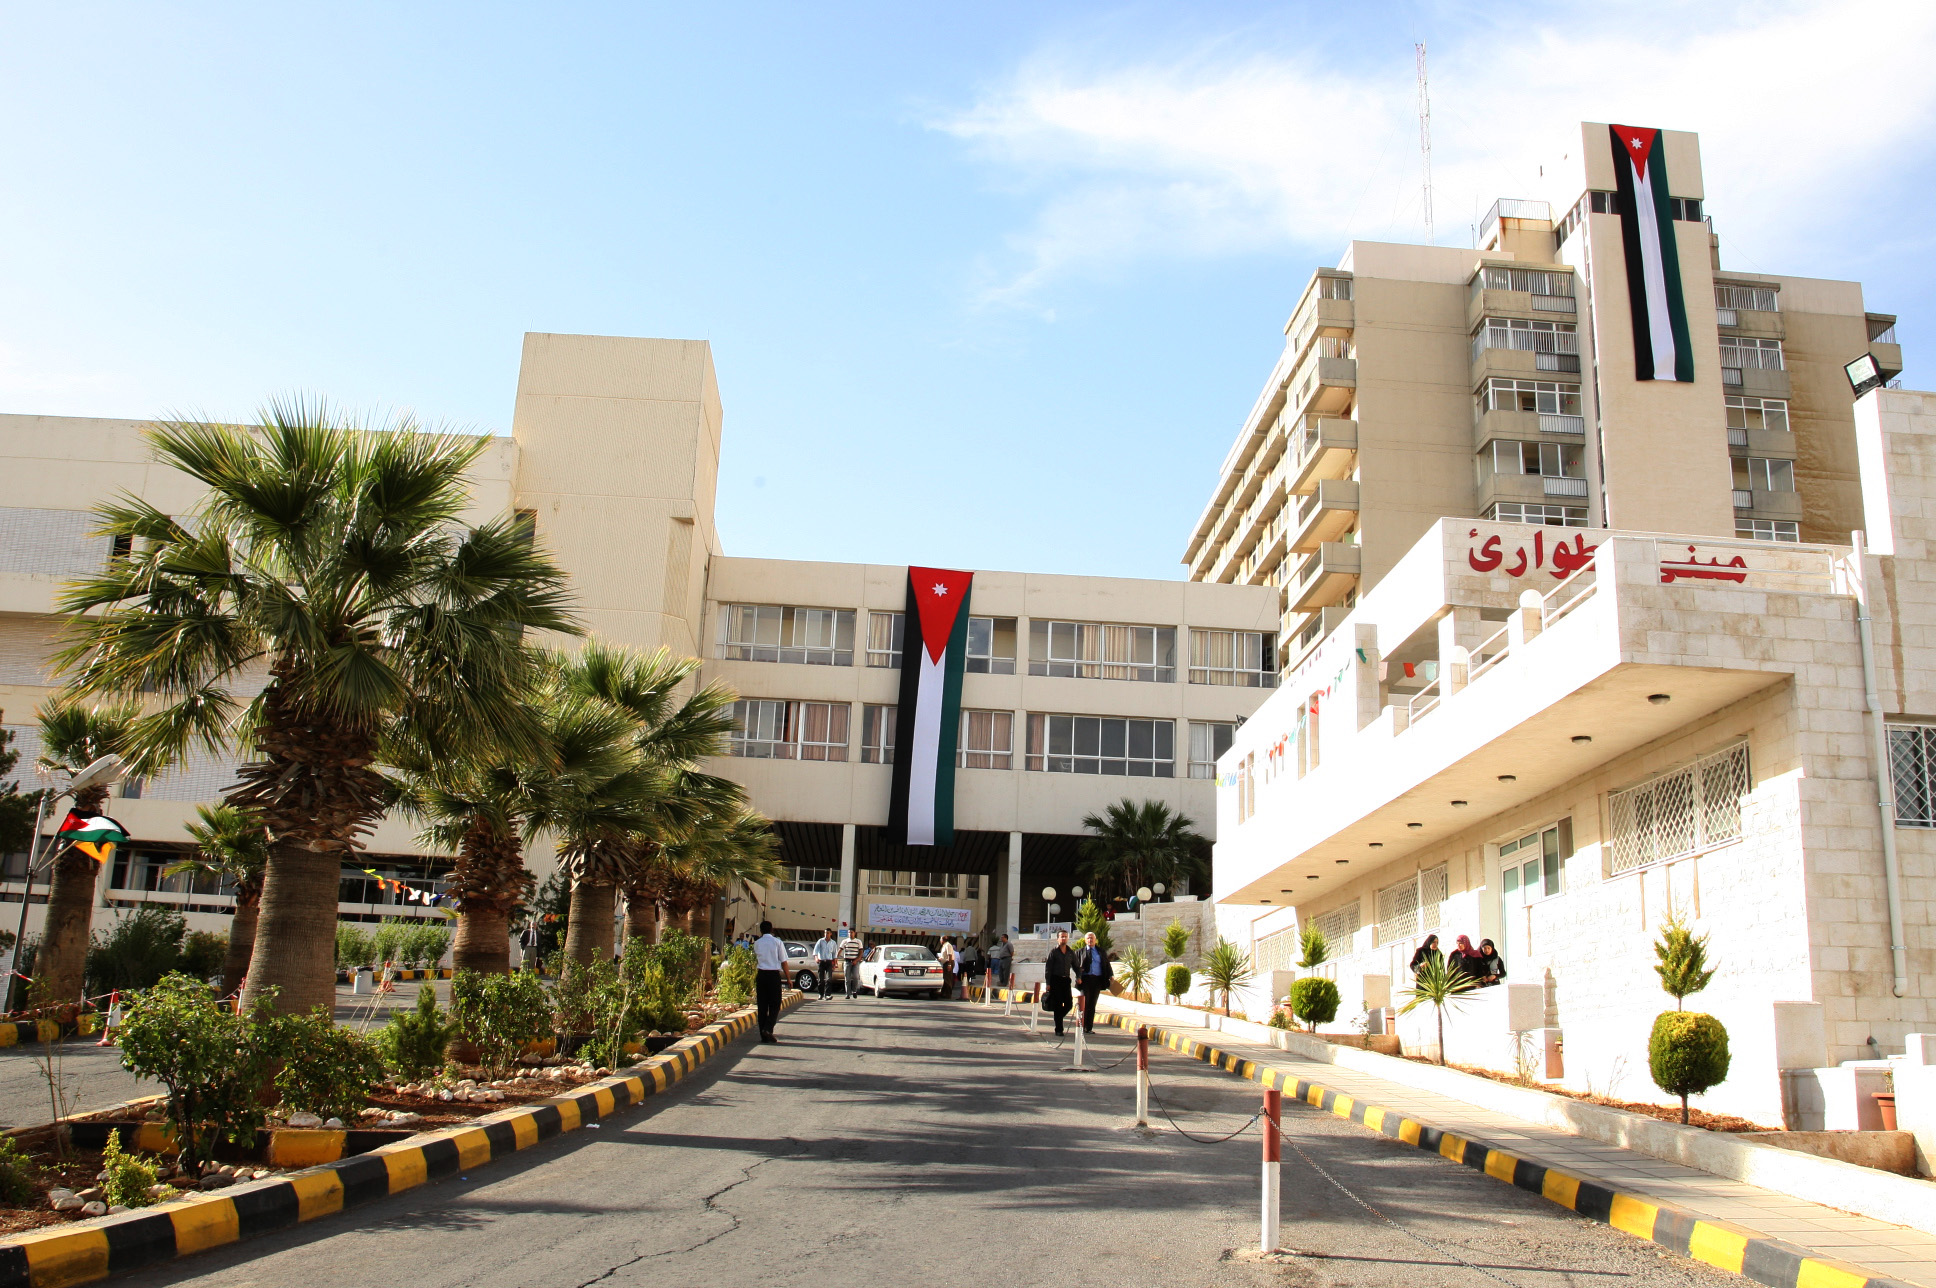 مدير مستشفى الجامعة الأردنية لـ"سرايا": إغلاق قسم الكلى 24 ساعة بعد إصابة ممرضة كانت في "إجازة" بفيروس كورونا